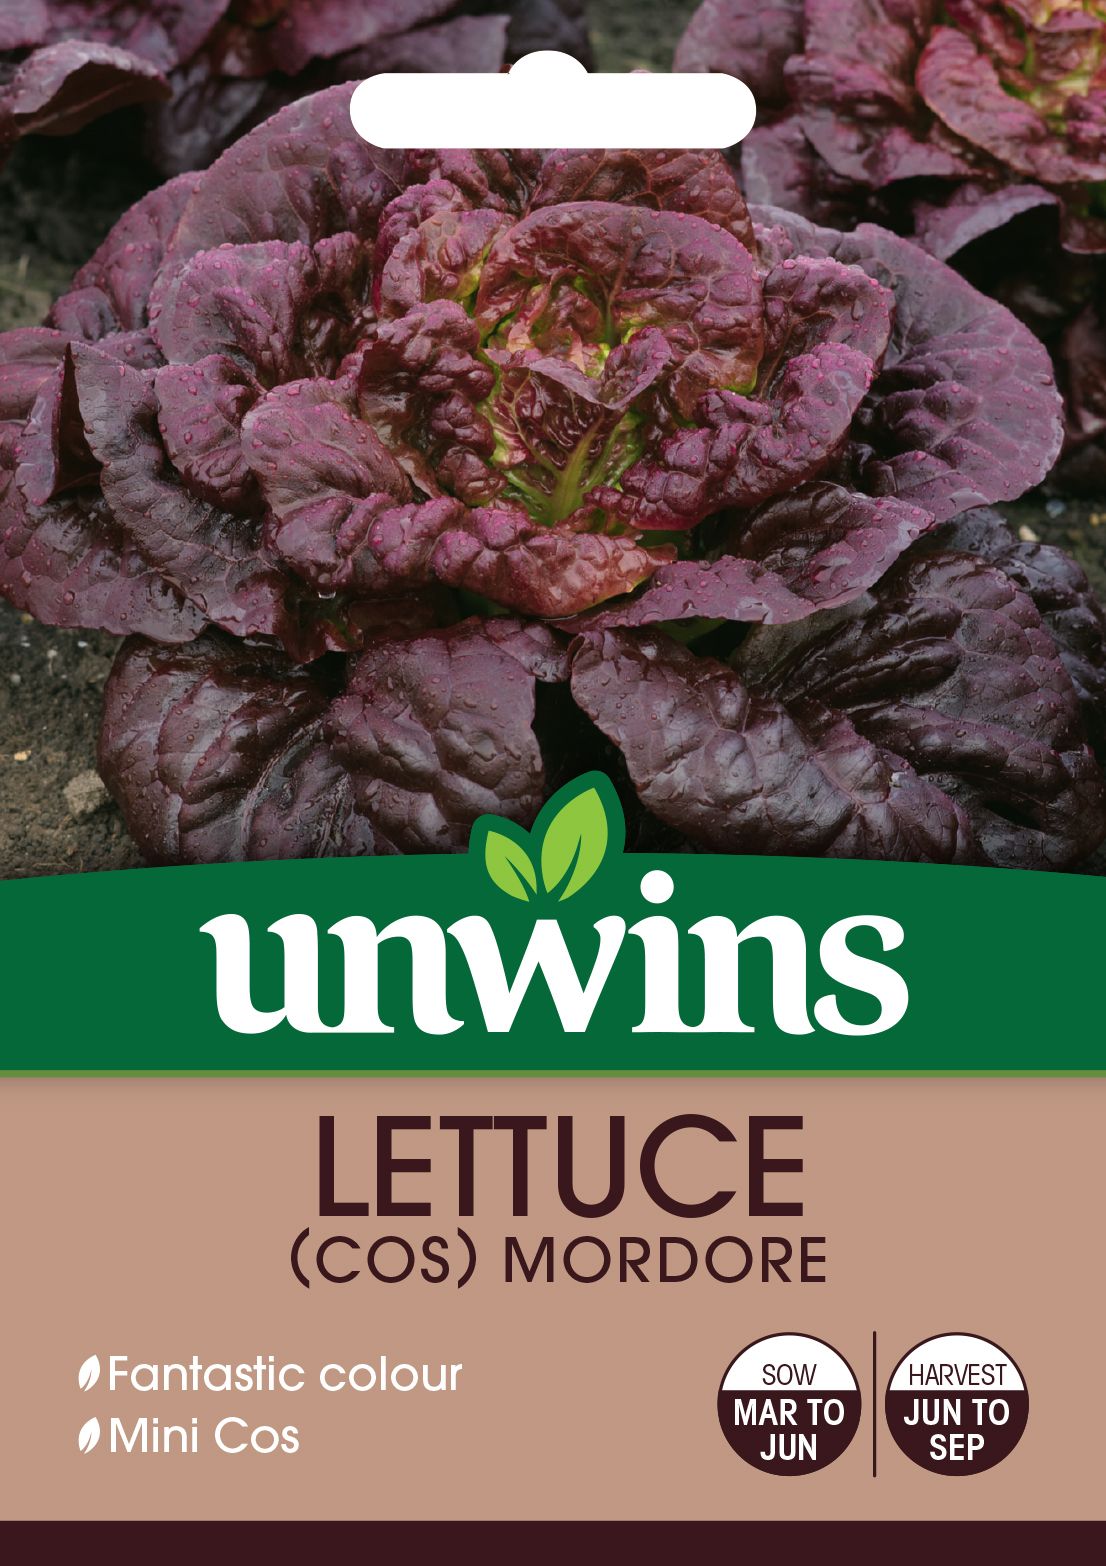 Lettuce (Cos) Mordore